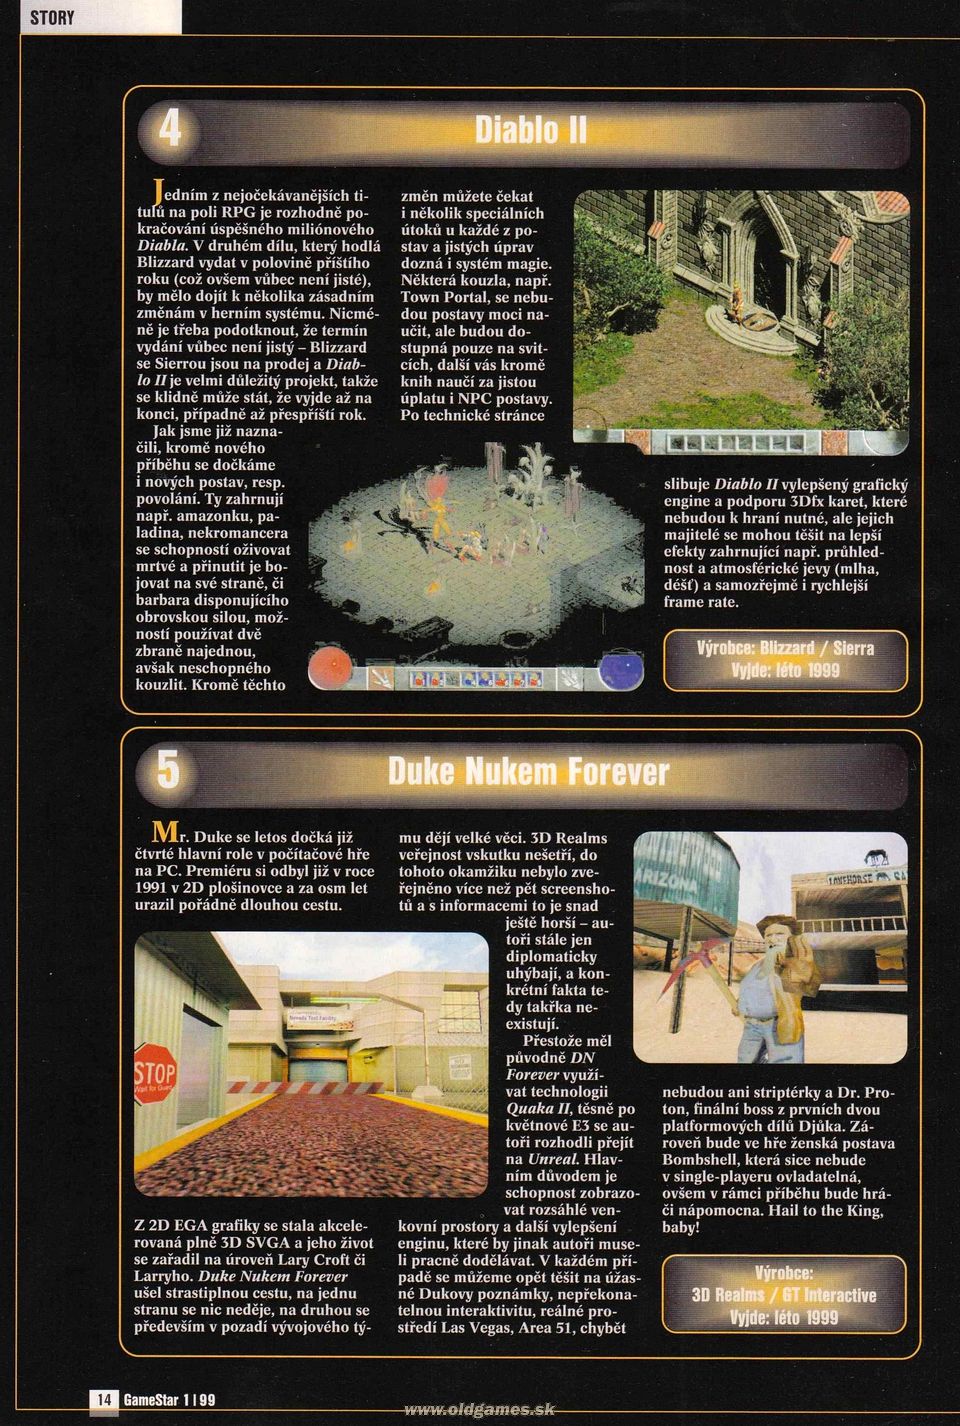 1999 Top 10 - Diablo II, Duke Nukem Forever